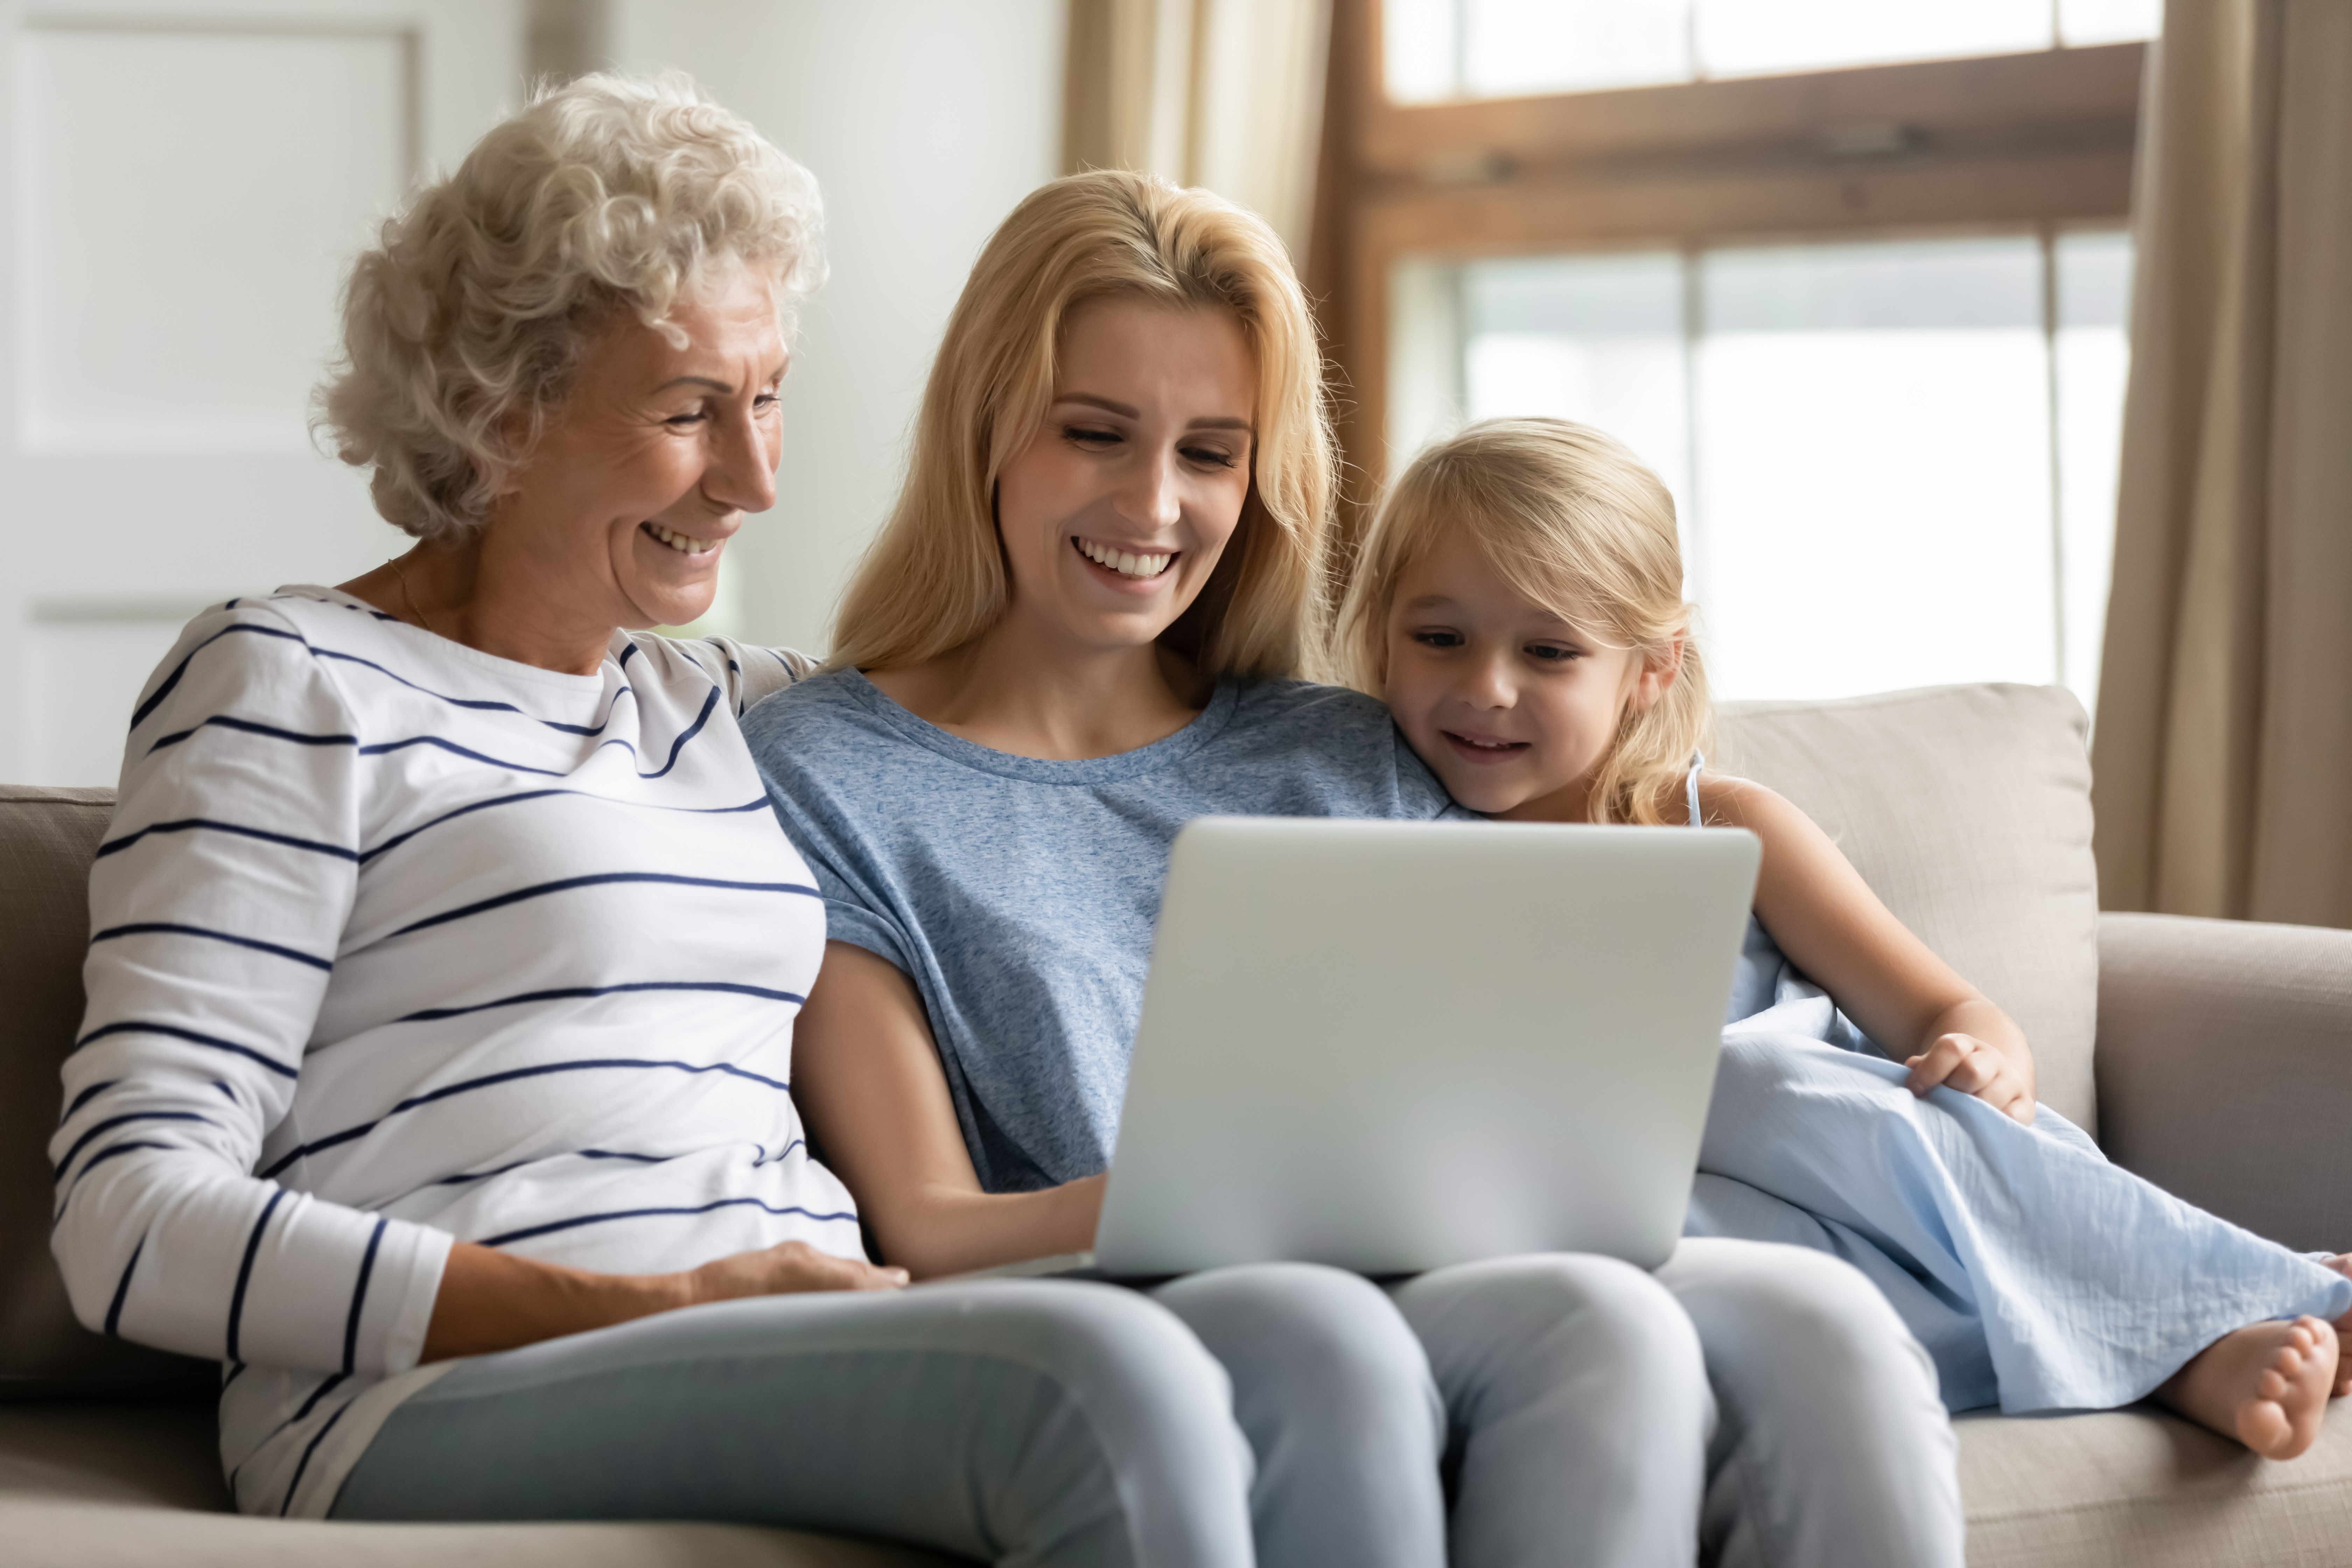 Oma, Mutter und Enkeling betrachten einen Laptop